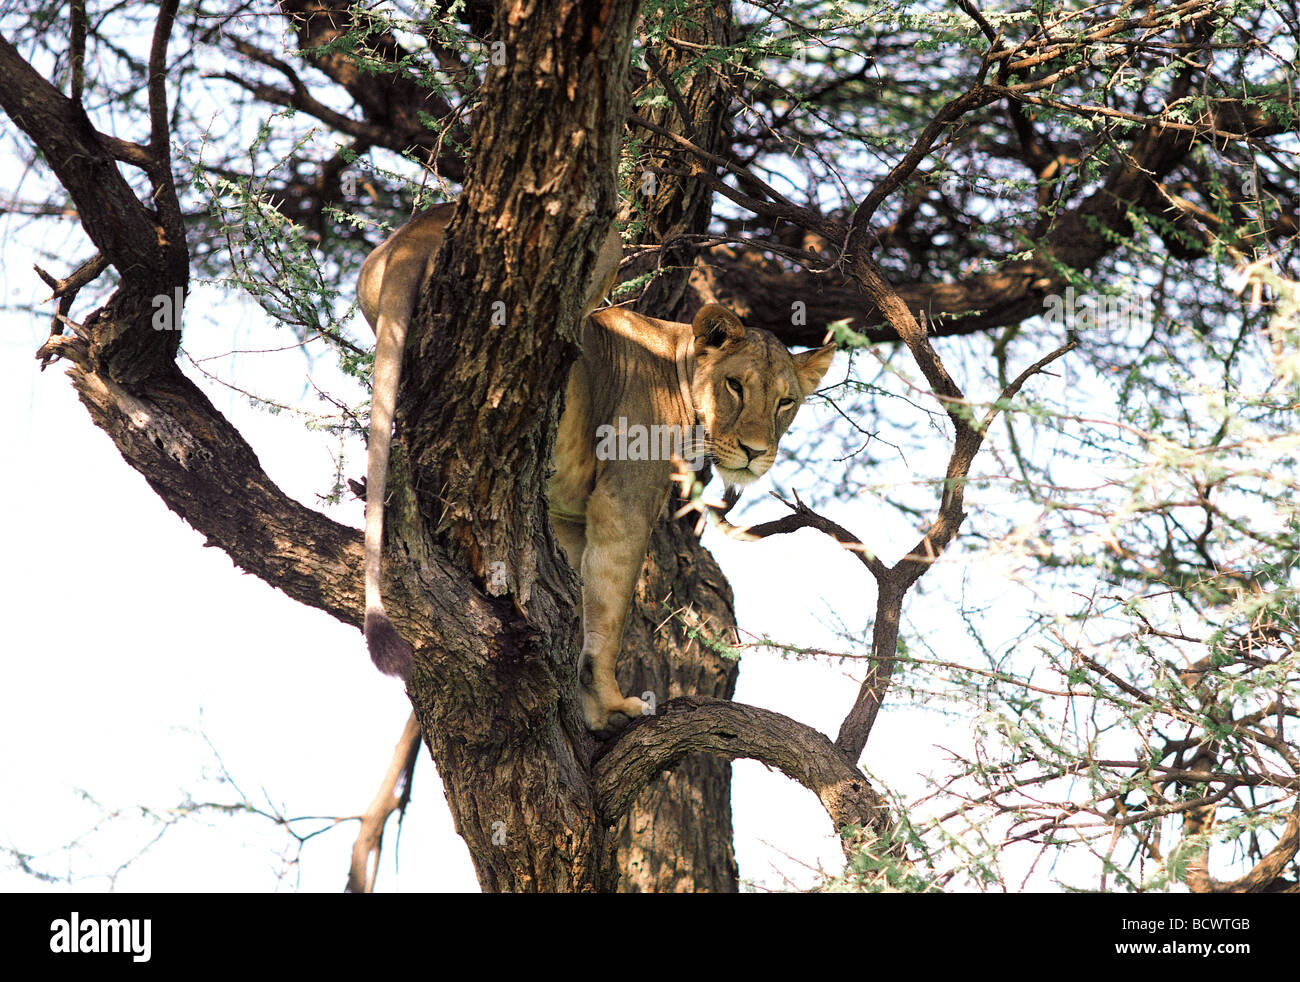 L'accrobranche lionne élevée dans un acacia de la réserve nationale de Samburu, Kenya Afrique de l'Est Banque D'Images